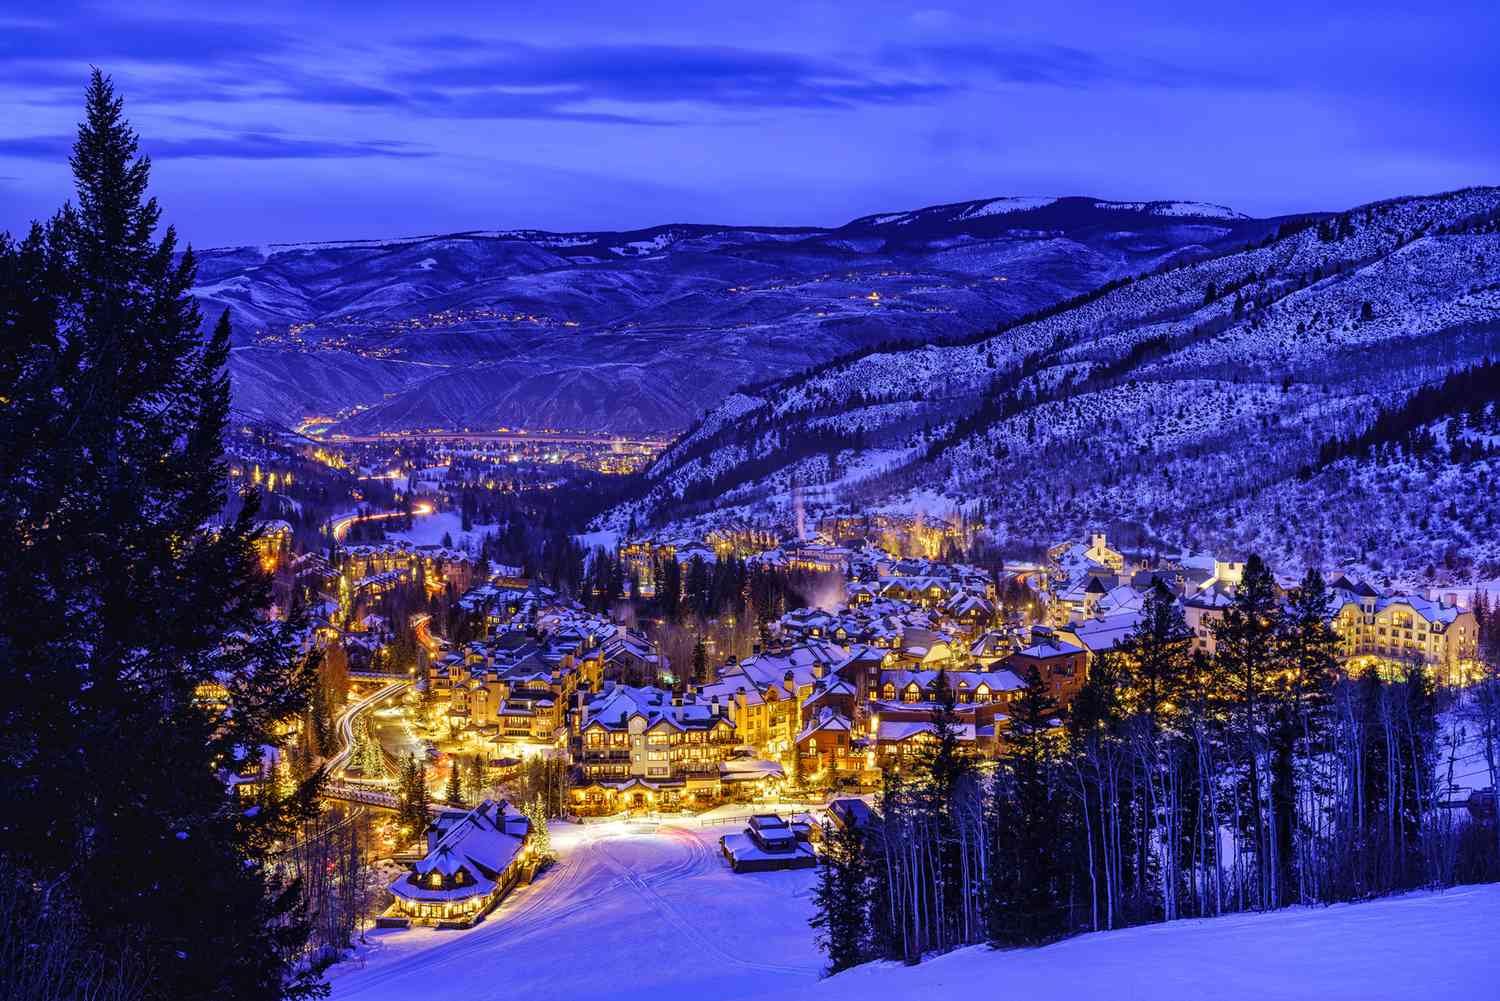 Beaver Creek Colorado Village at Night - Vue crépusculaire au crépuscule des lumières du village et de la ville la nuit en hiver depuis les pistes de ski.